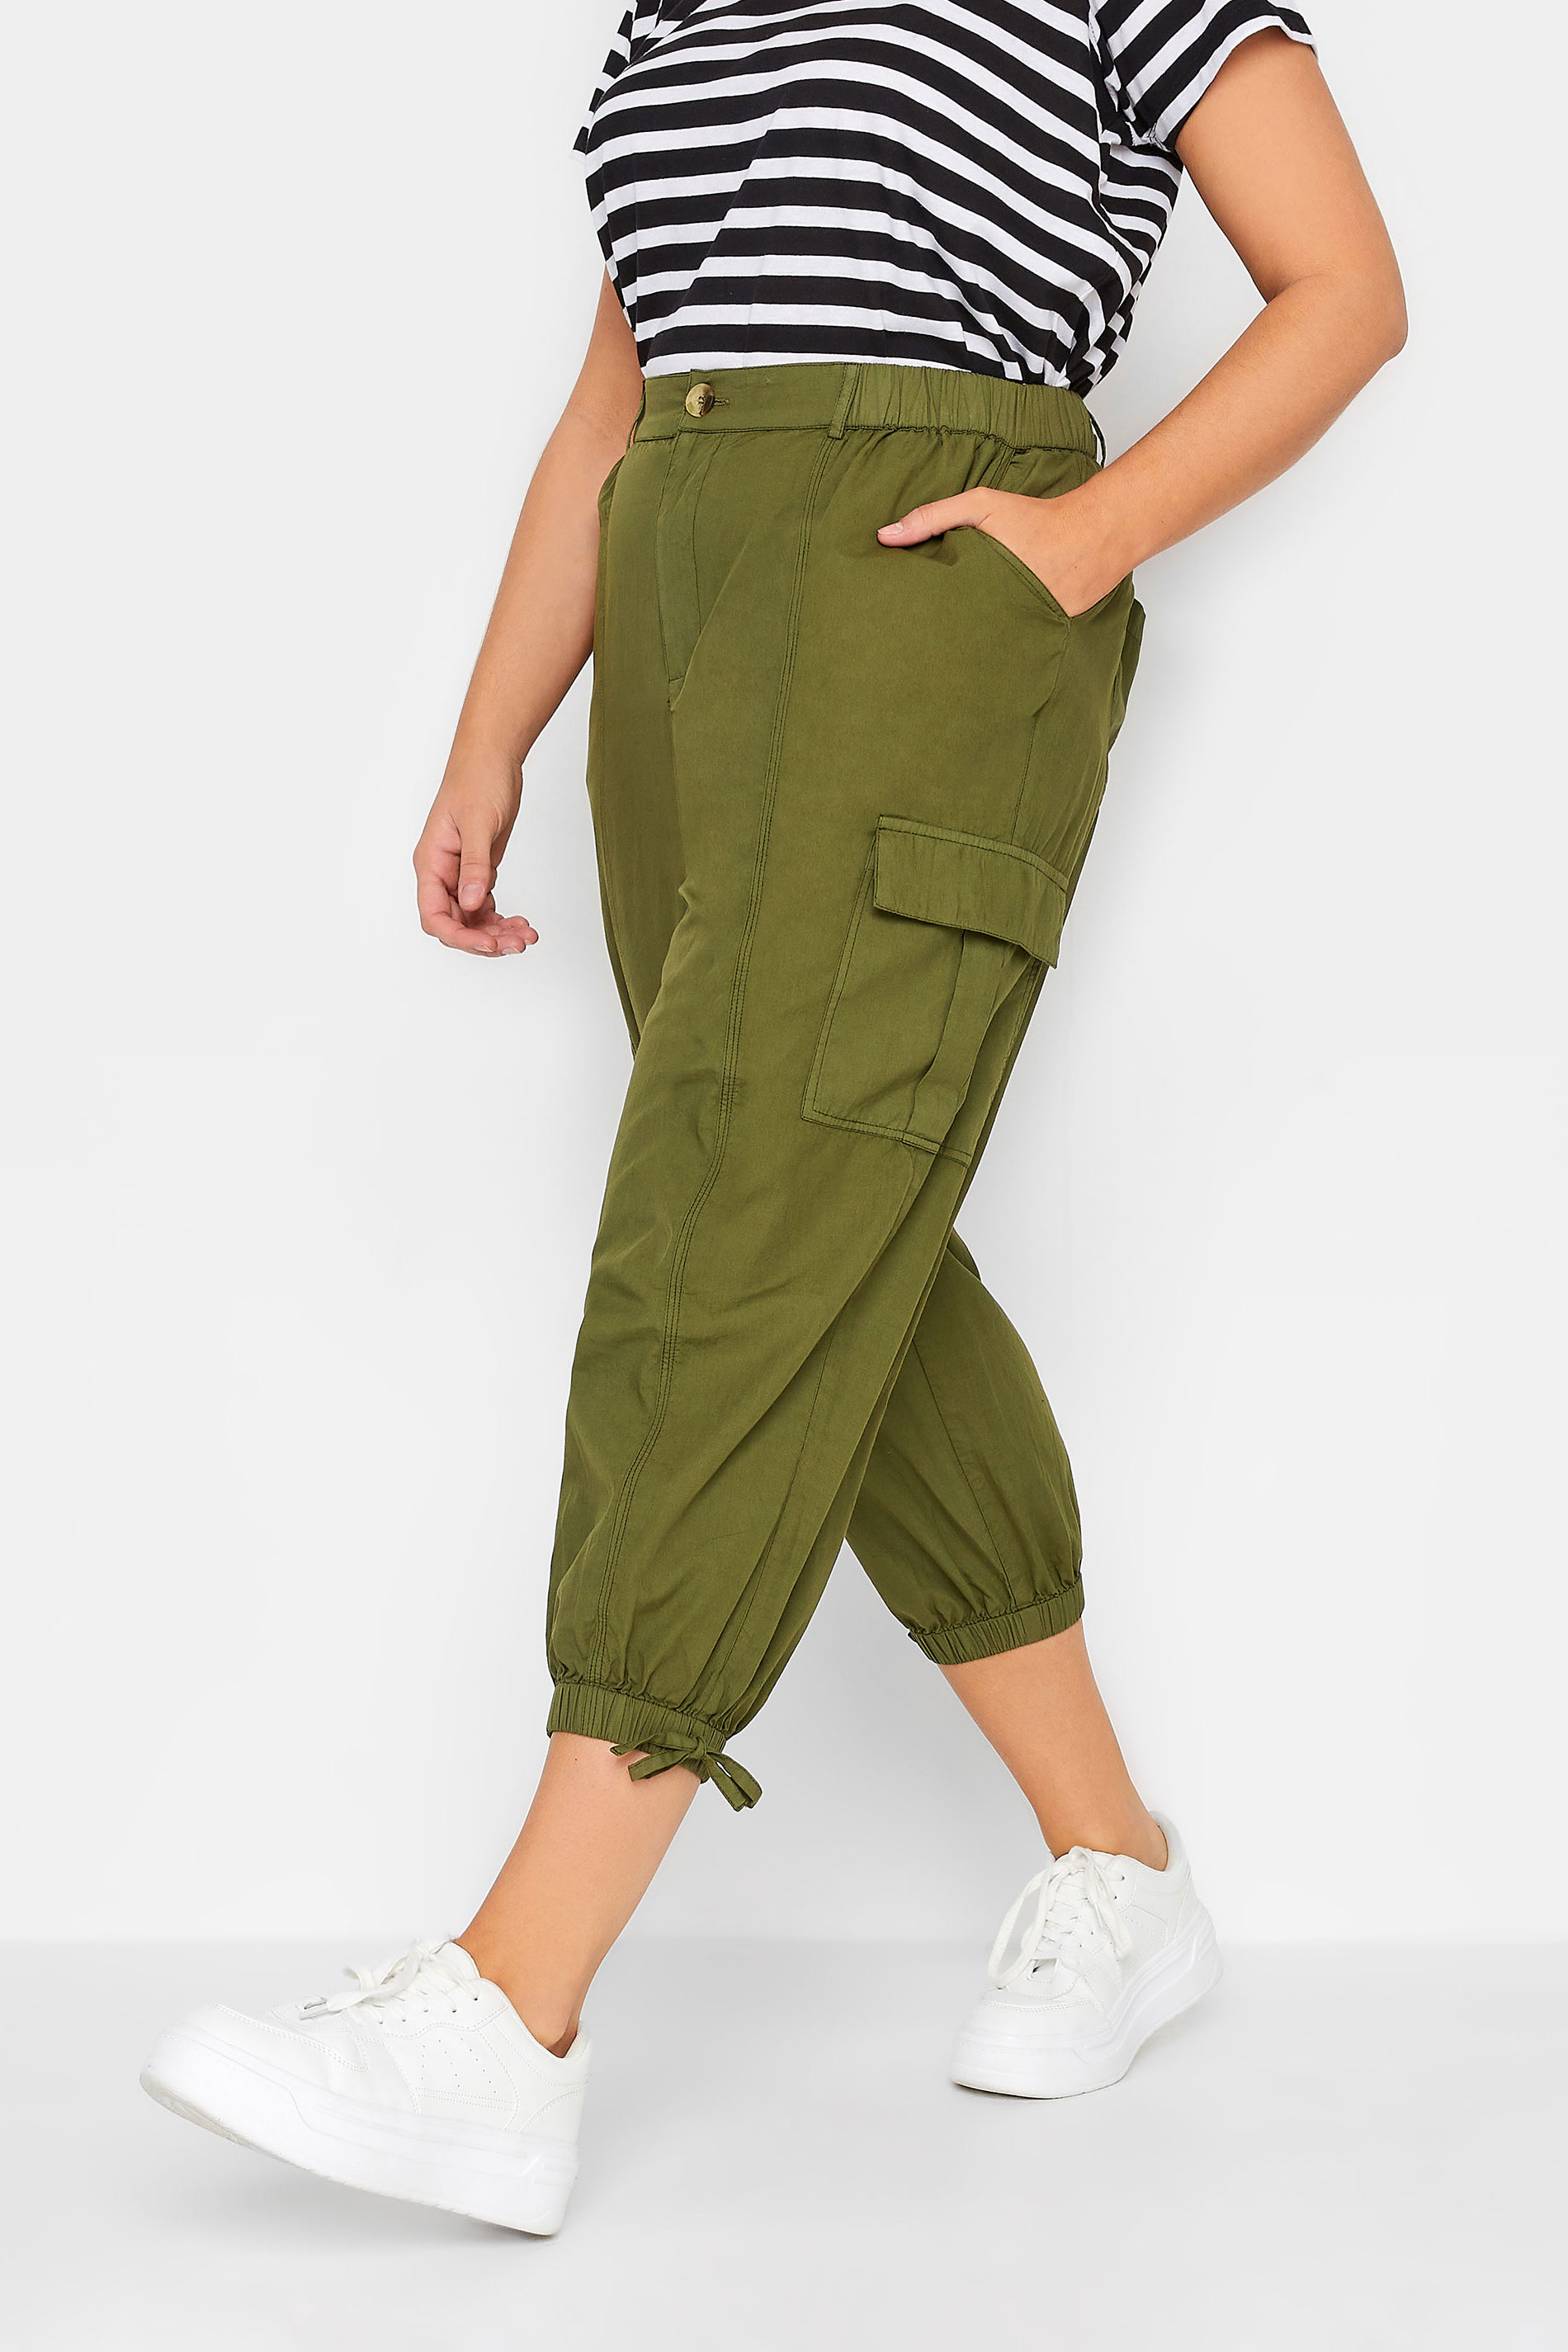 Buy Ho Bindaass Mens Slim fit Cargo Pant Stretchable six Pocket Cargo  Trousers for Men  Olive Khaki Grey 30 Khaki at Amazonin